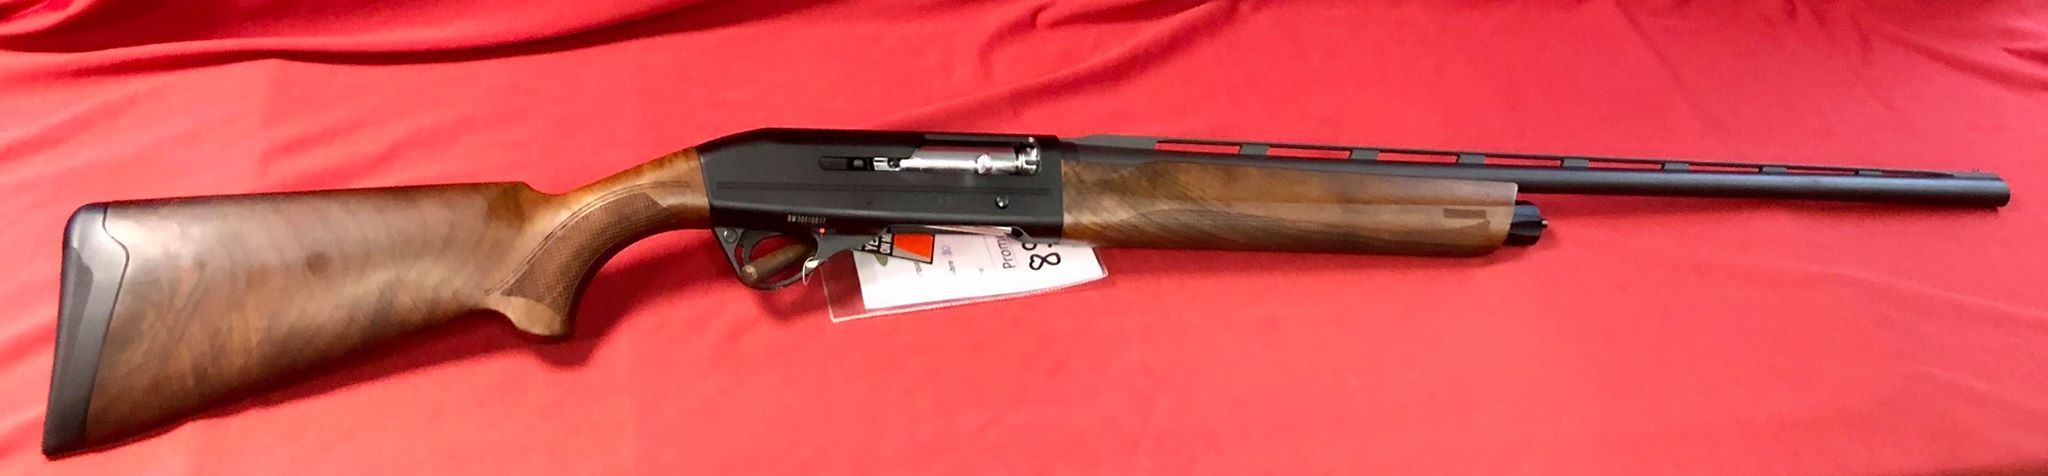 Fusil semi-automatique Franchi calibre 20/76 , chokes interchangeables , 
Longueur du canon: 71cm
Longueur de la crosse: 37cm